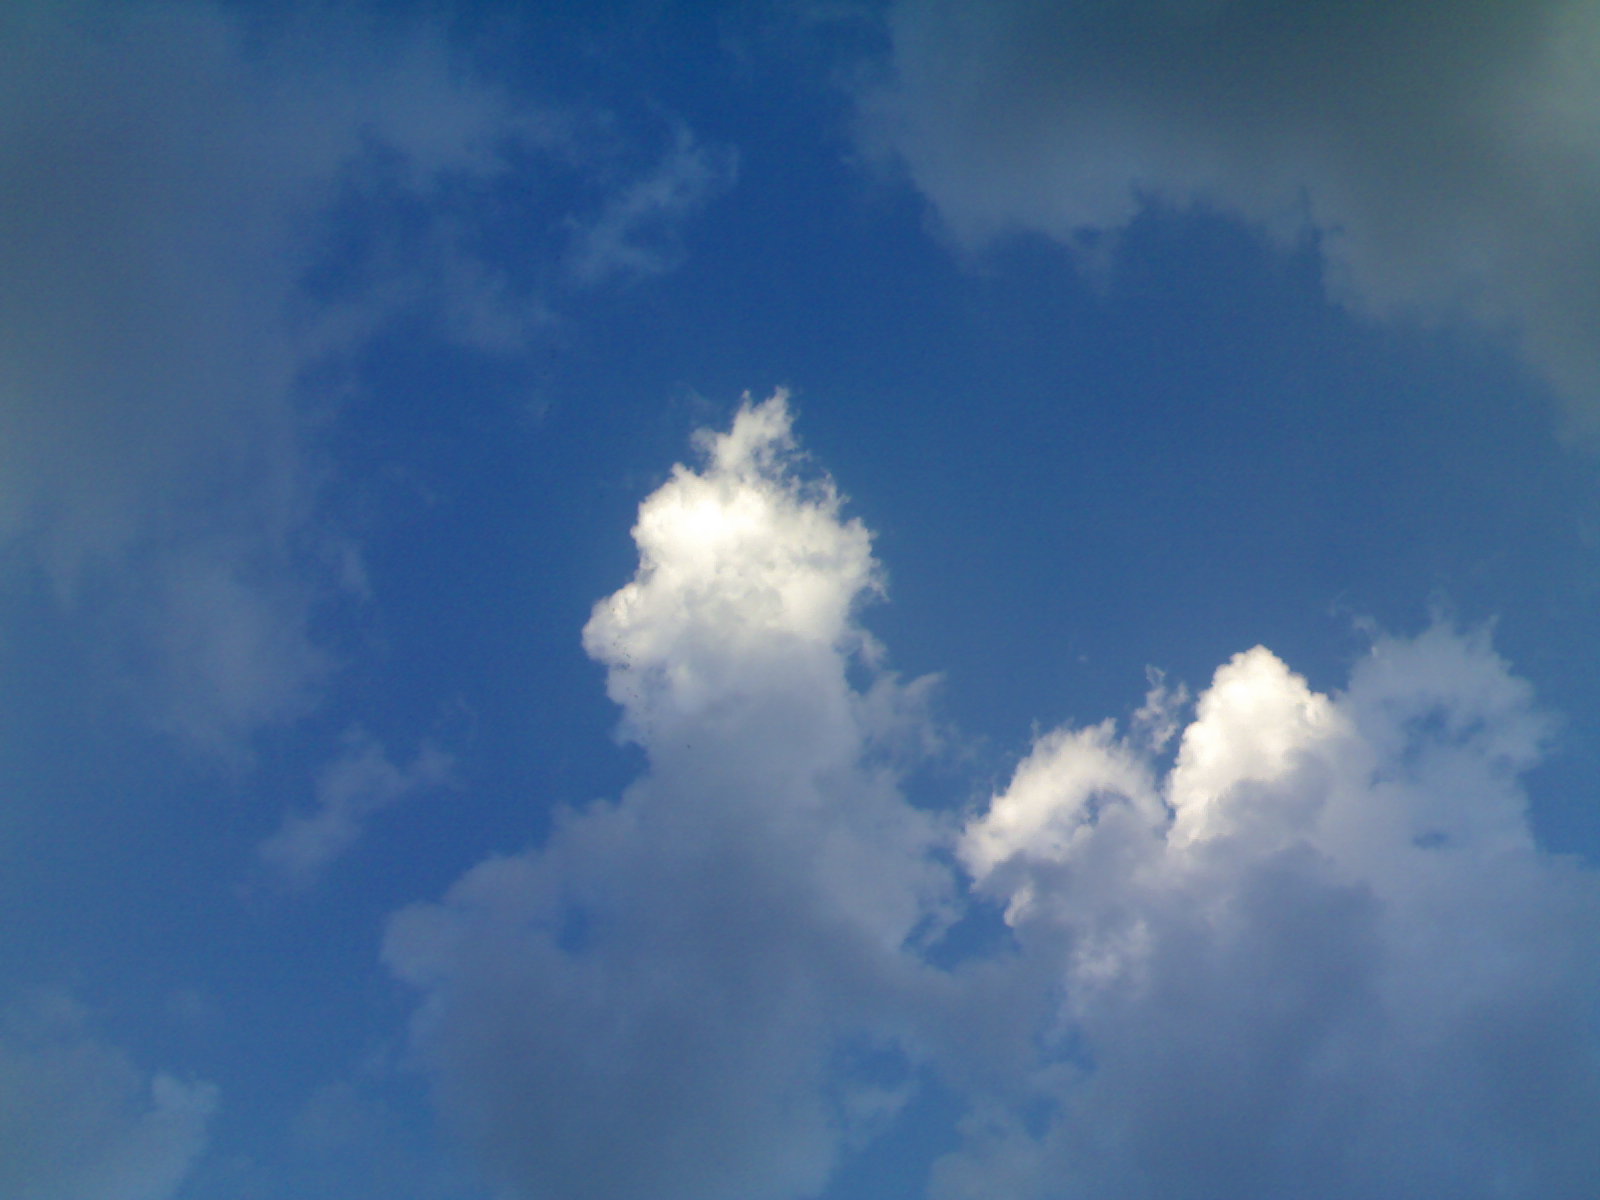 GOD SHIVA APPEARING IN SKY IN 2008 - 2012